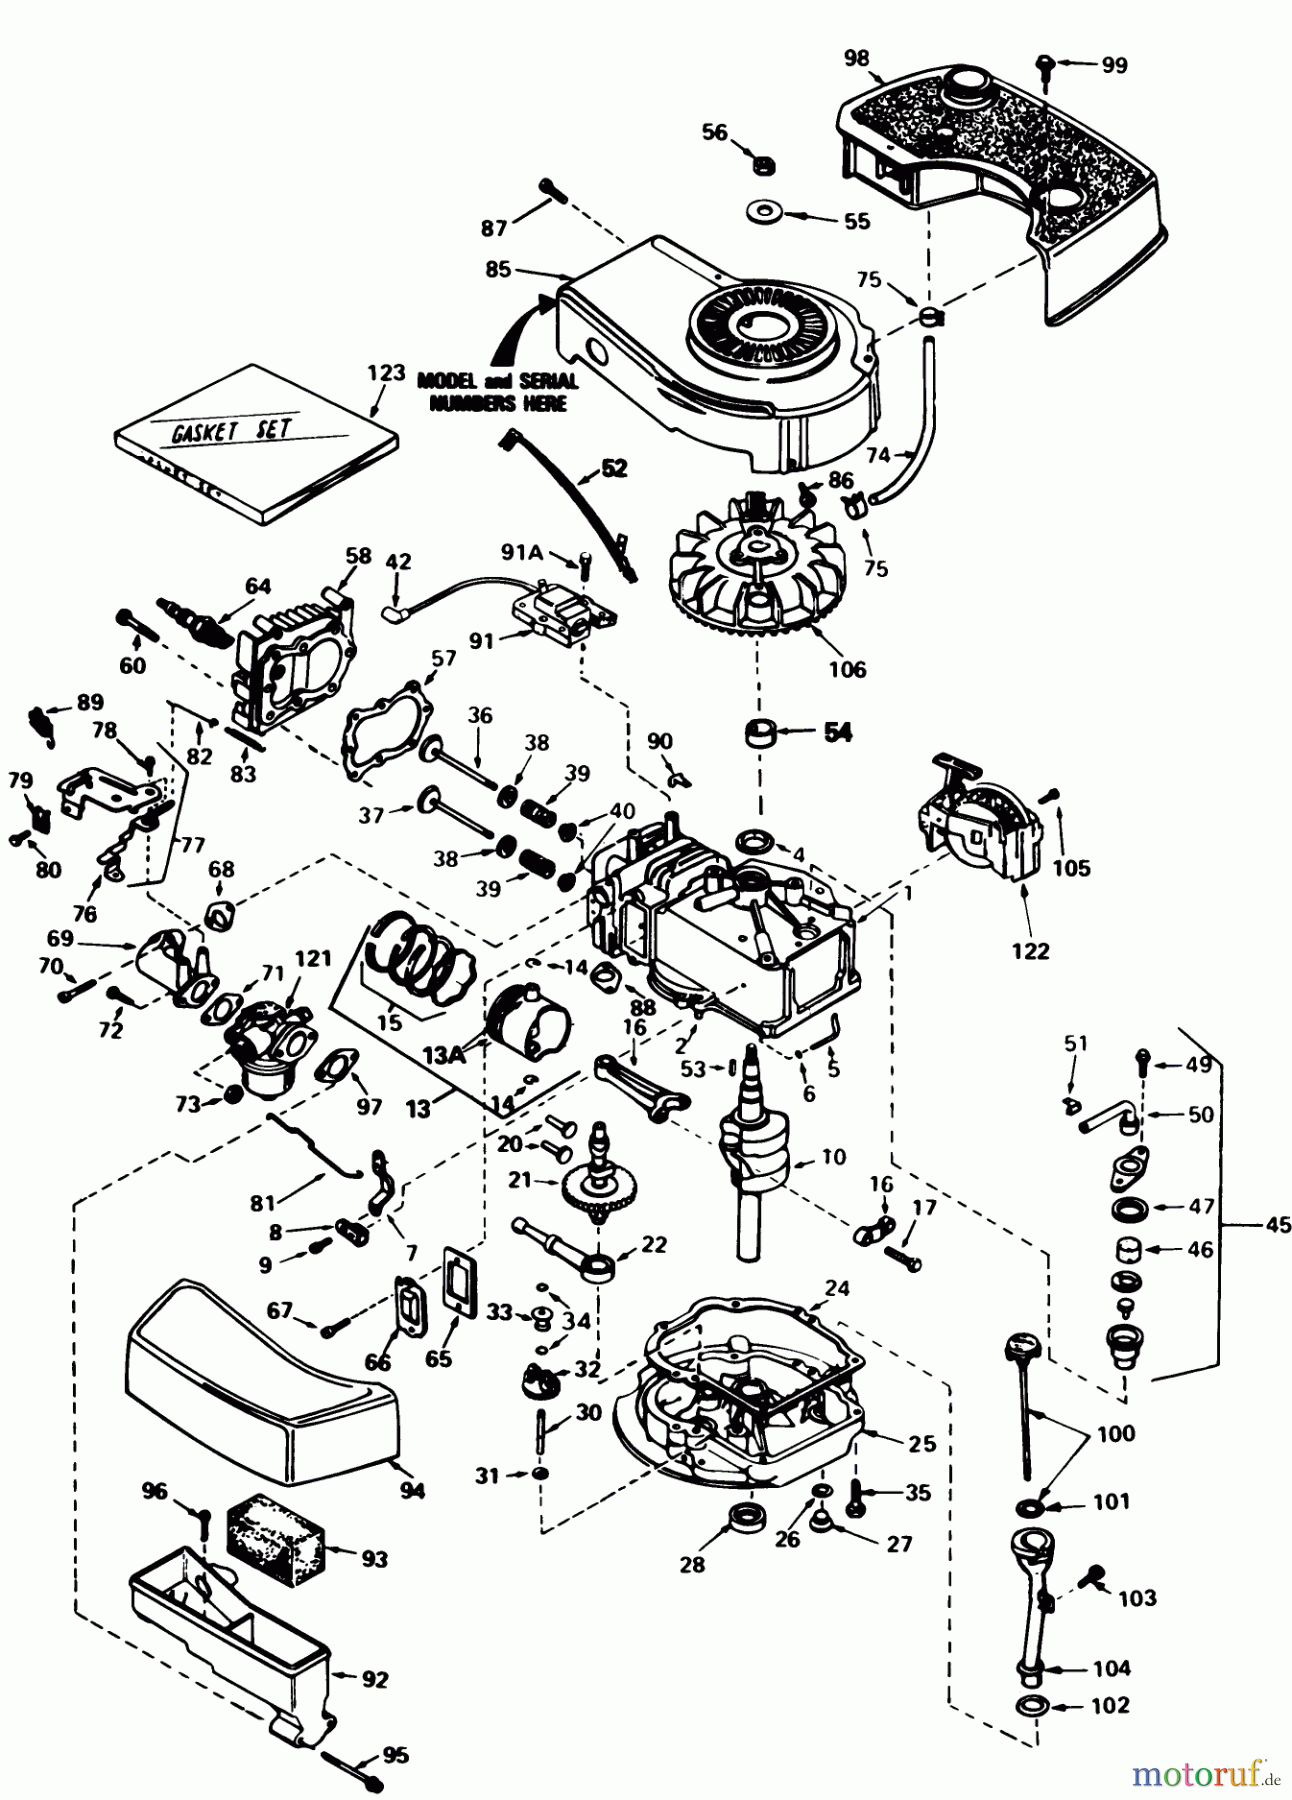  Toro Neu Mowers, Walk-Behind Seite 1 20810 - Toro Lawnmower, 1983 (3000001-3999999) ENGINE TECUMSEH MODEL NO. TNT 100-10077E